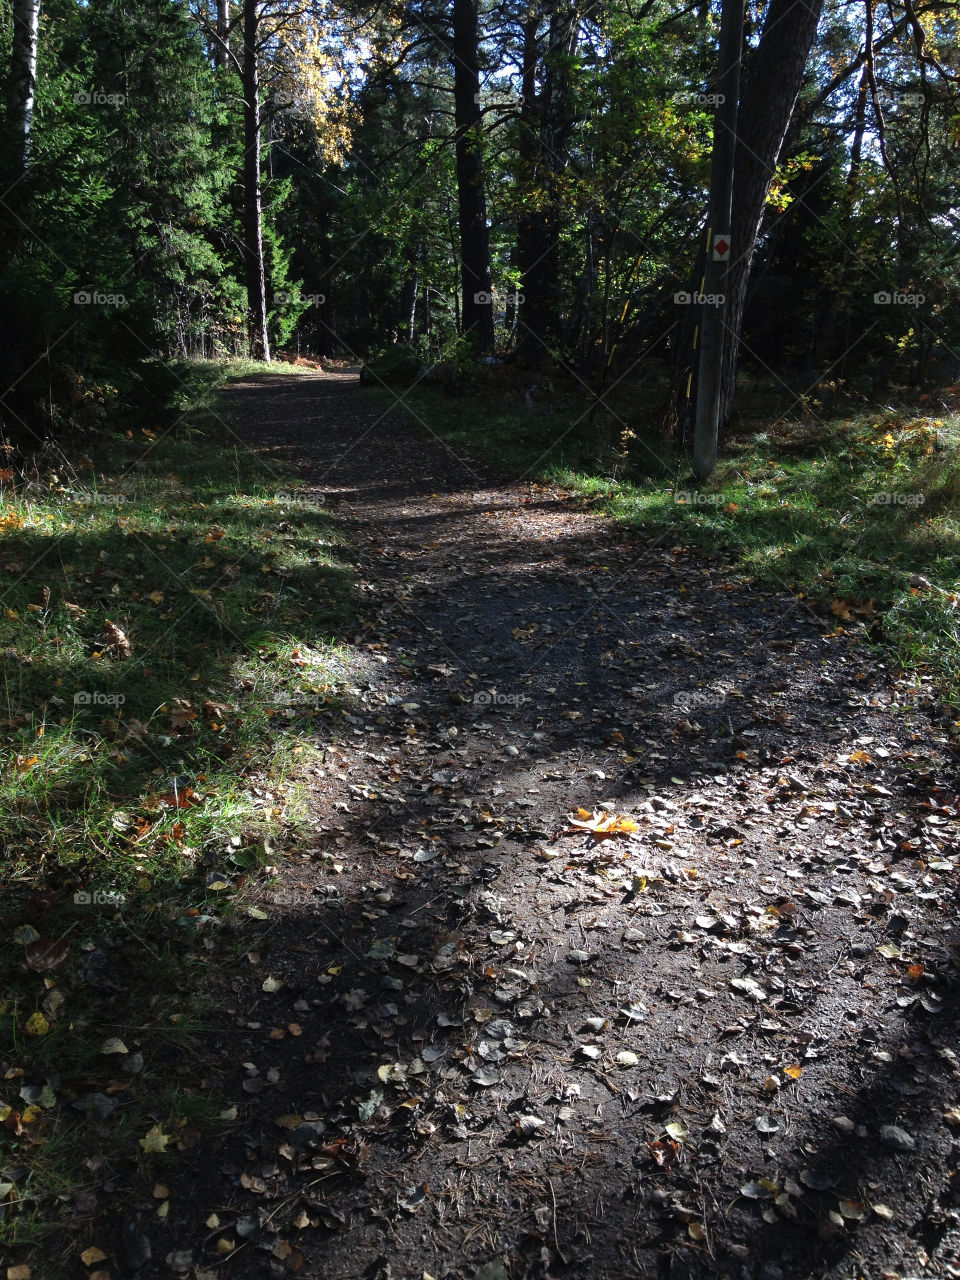 sweden forest autumn path by jonekl